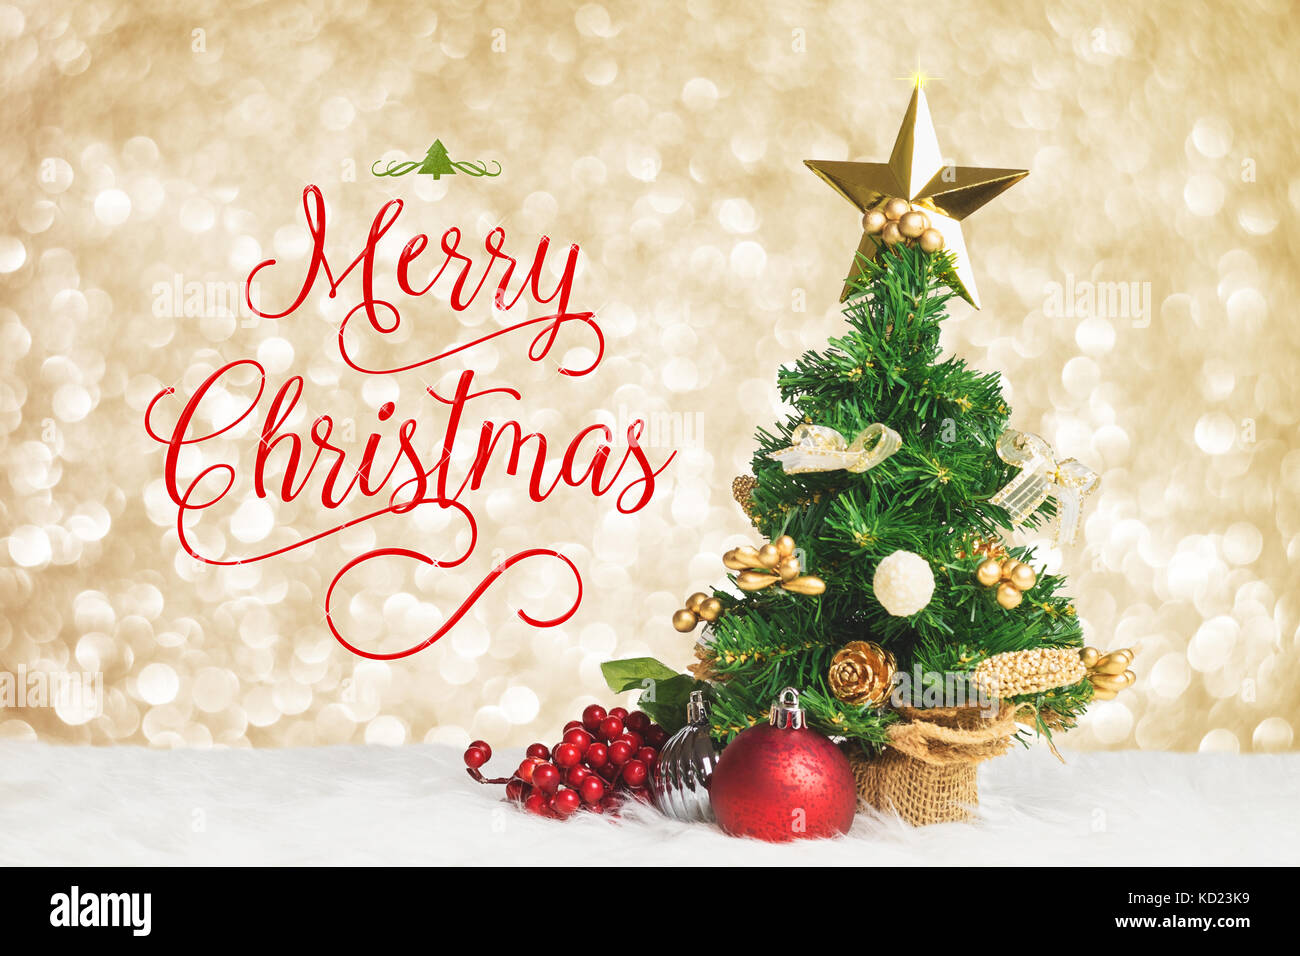 Feliz Navidad con arbol de navidad con bolas y cerezo decoran en piel blanca con oro plata bokeh sparkle fondo claro,tarjeta de felicitación Foto de stock